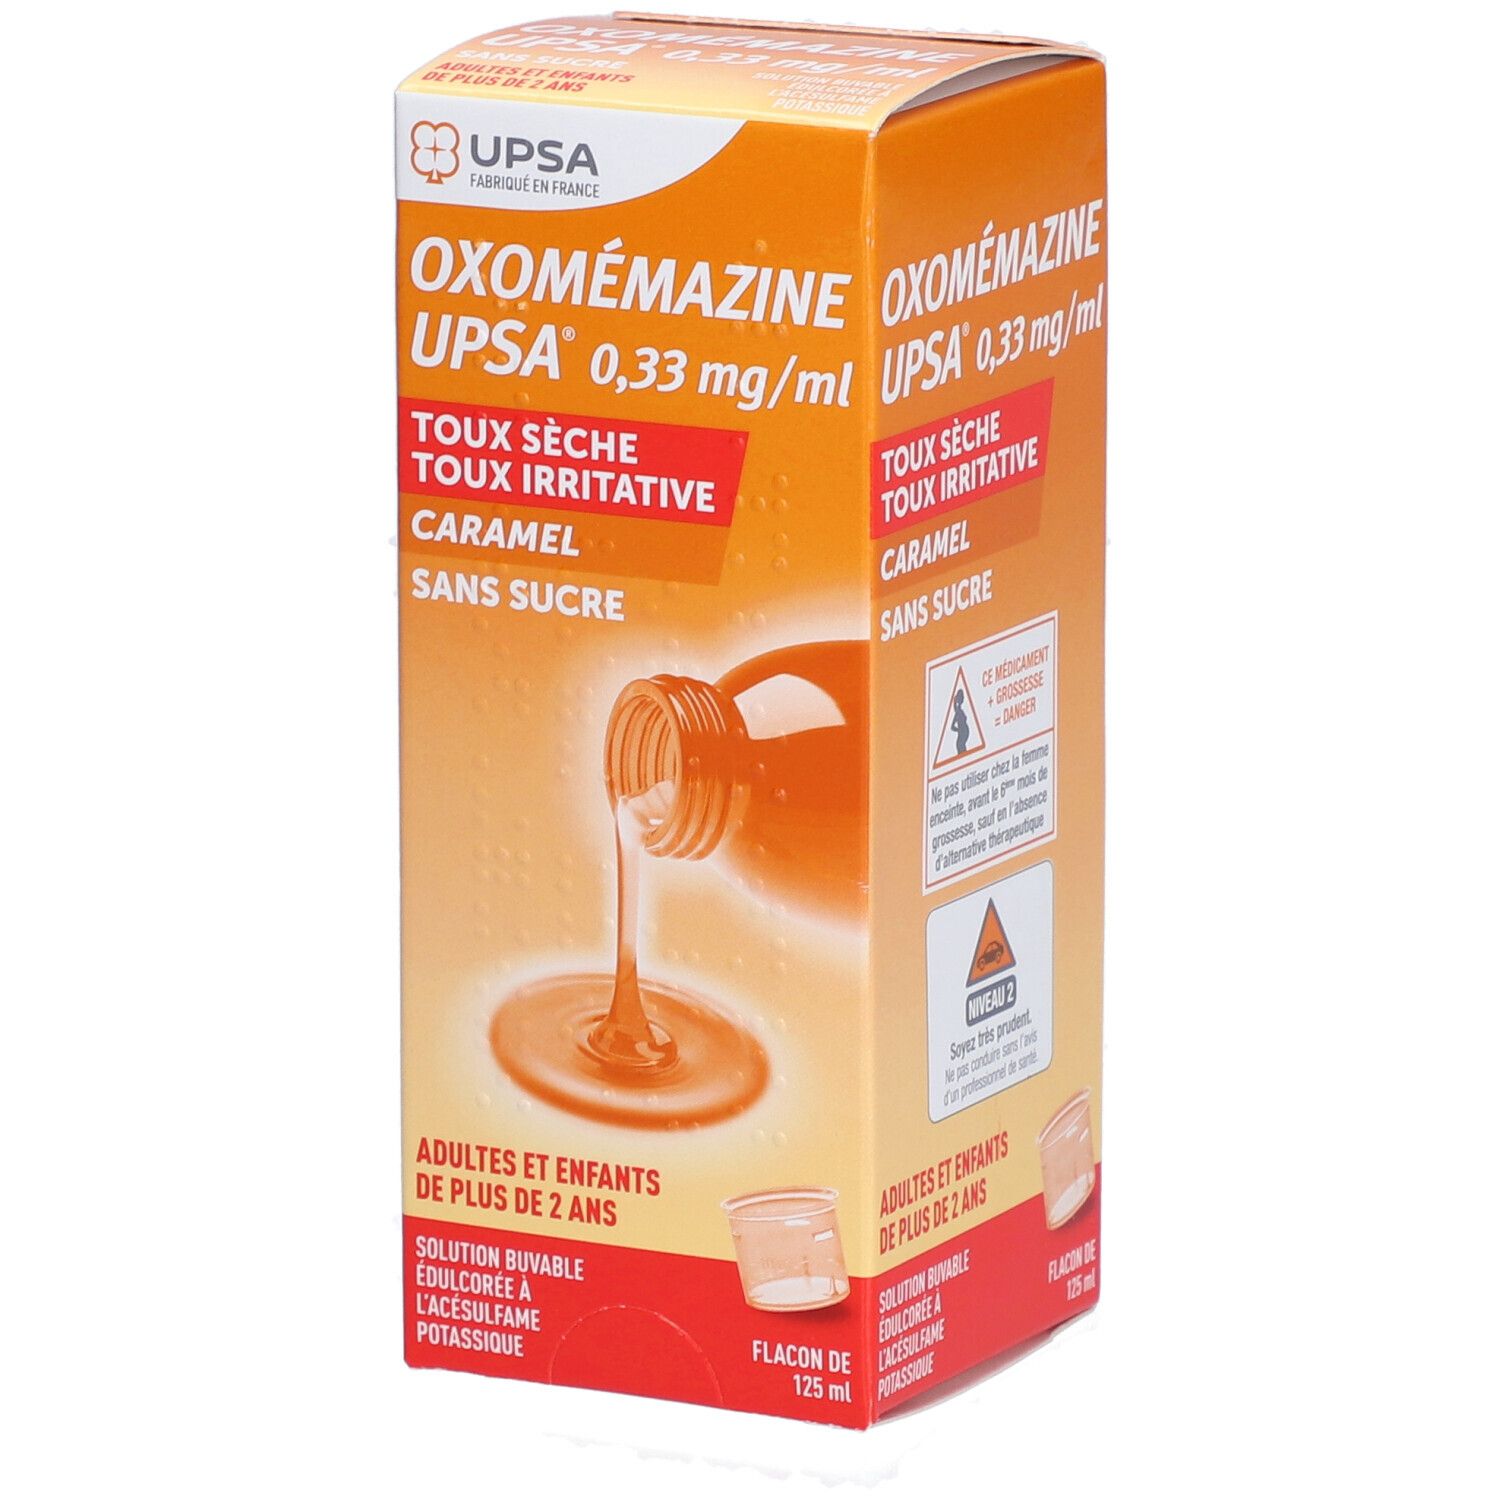 Oxomemazine Upsa 0,33 mg/ml Sans Sucre, solution buvable édulcorée à l'acésulfame potassiq